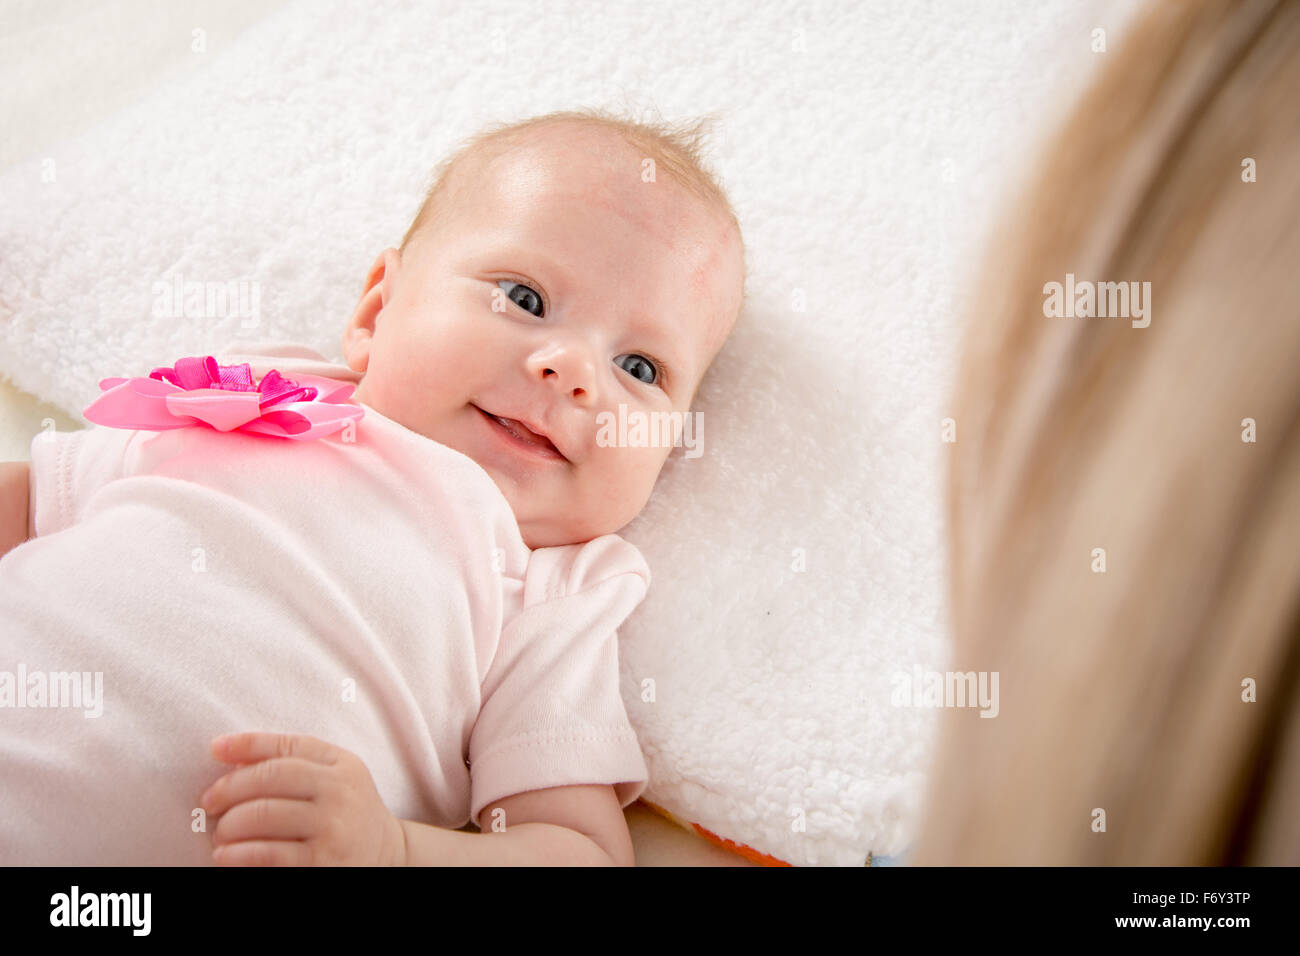 Deux Mois D Un Bebe Couche Sur Le Dos Sur Le Lit Assis A Cote De L Enfant Et Sa Mere La Regardant Photo Stock Alamy